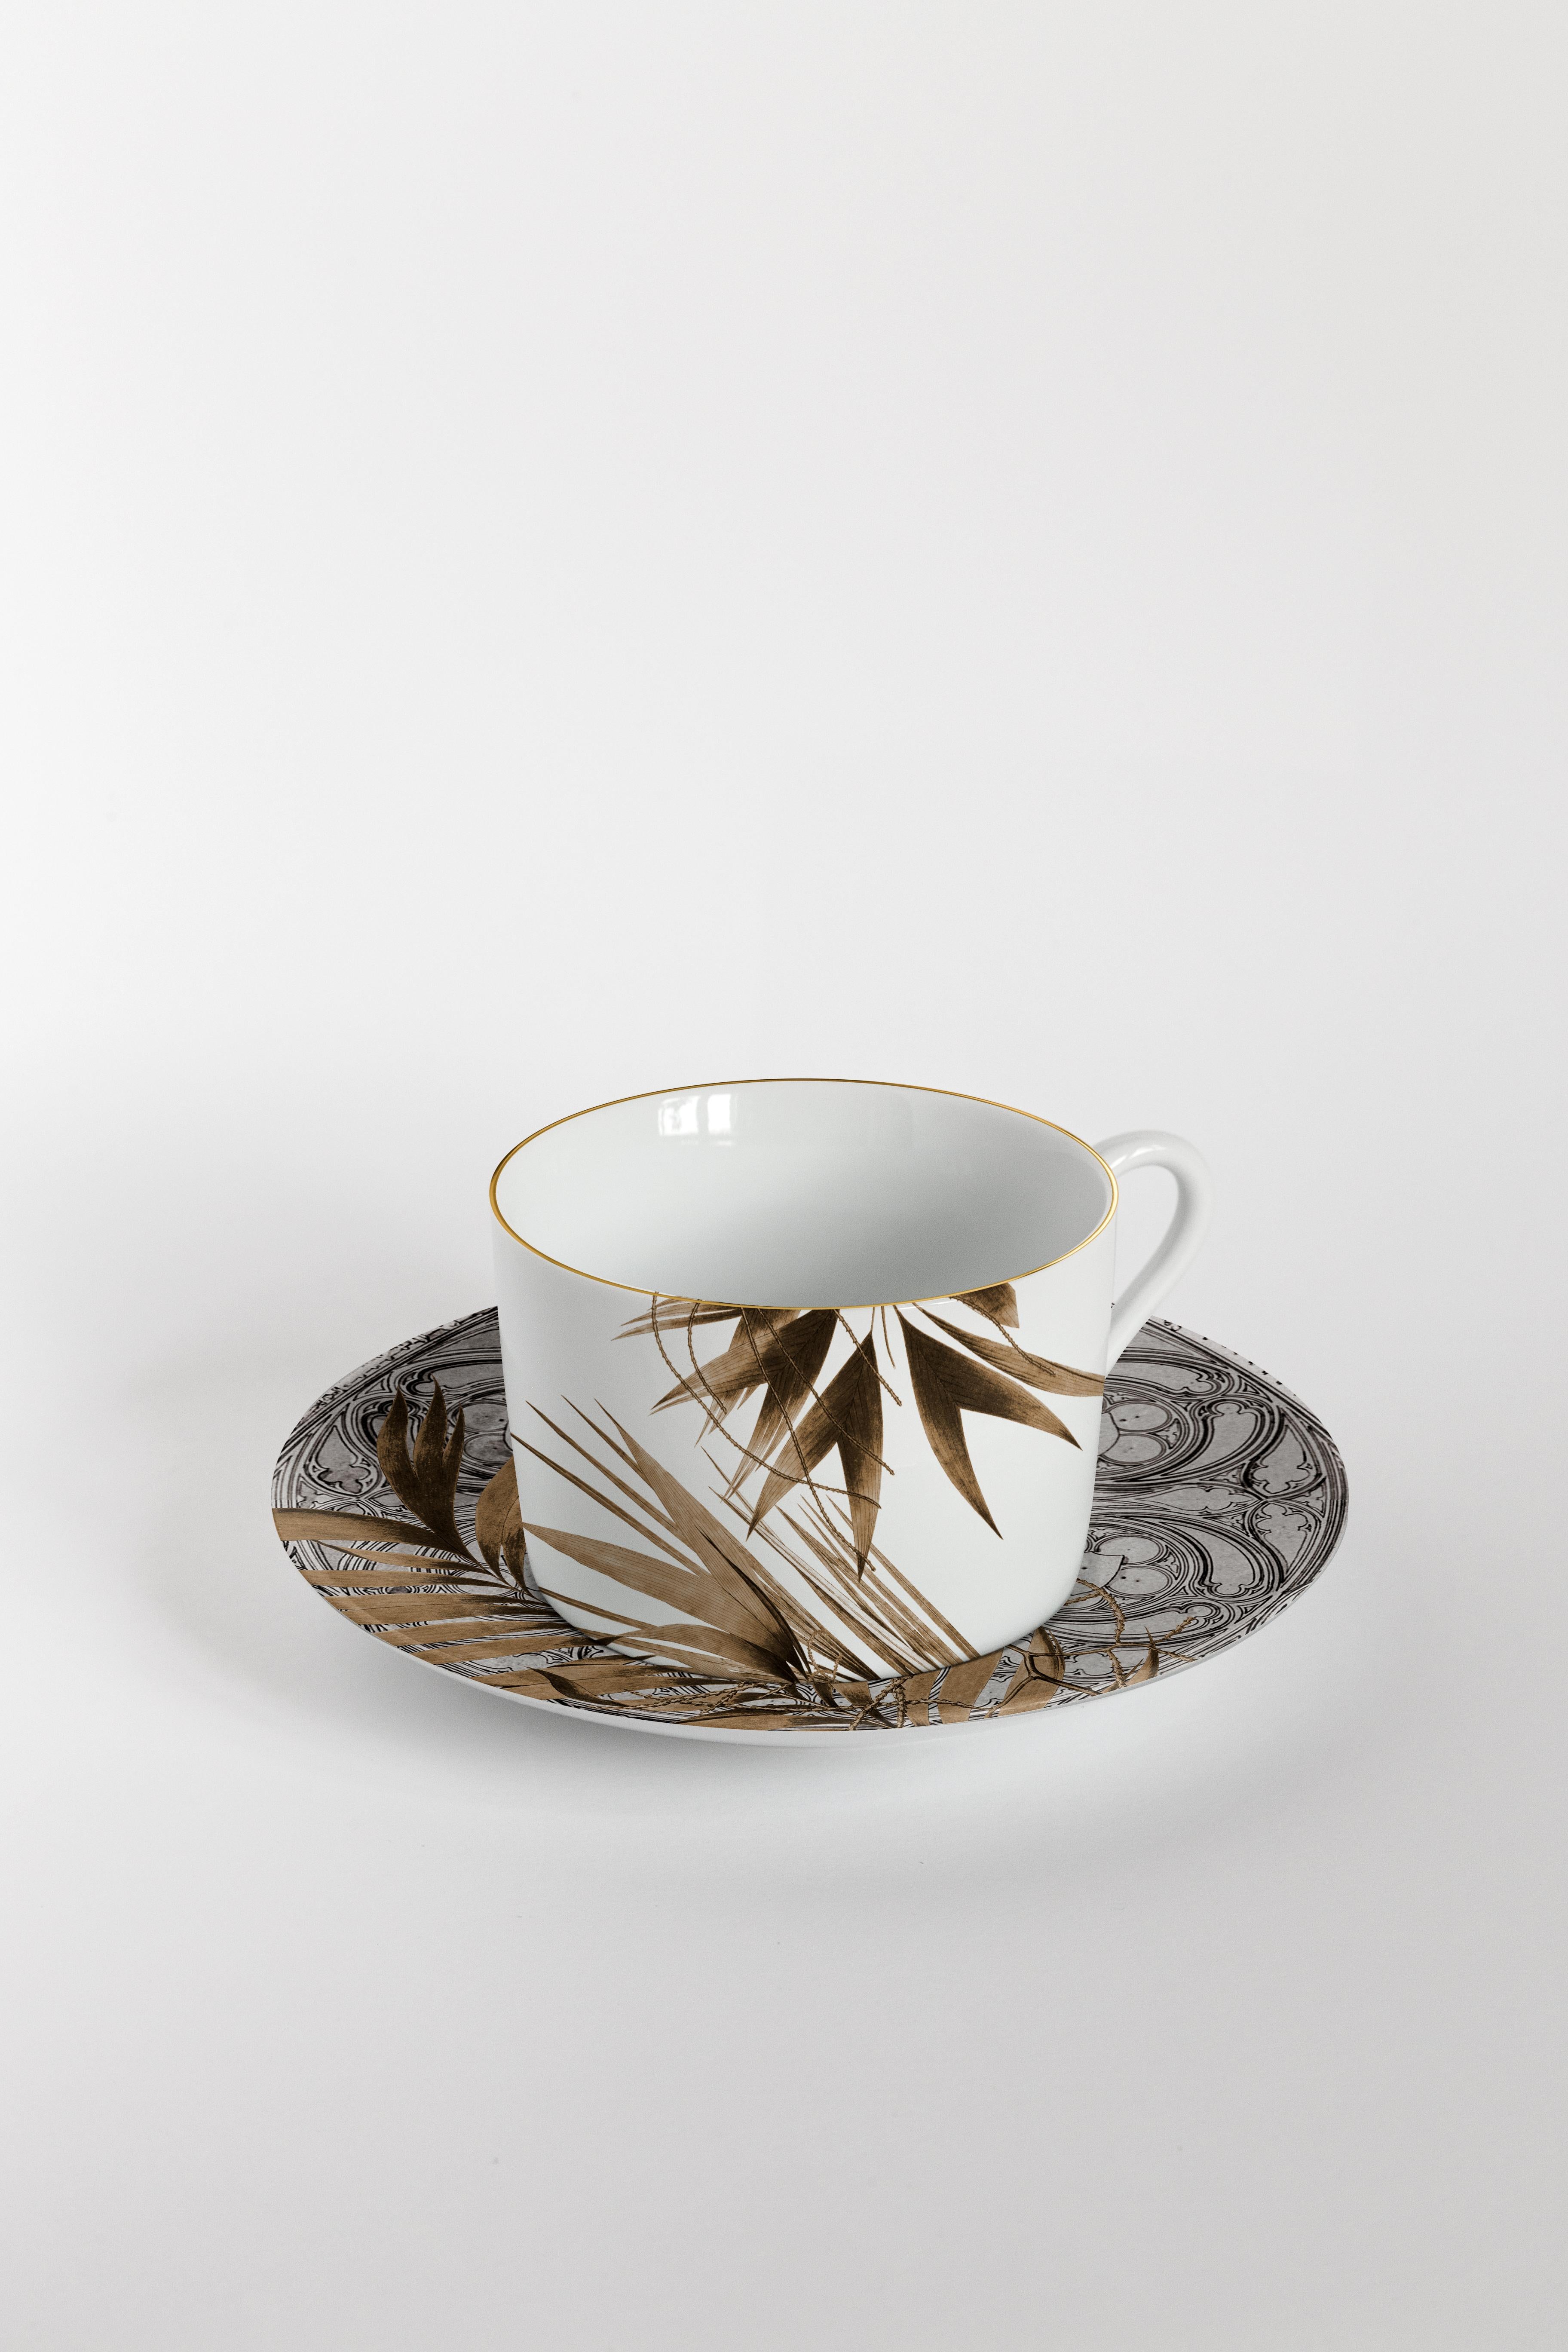 Il Duomo Che Non C'è, Six Contemporary Decorated Tea Cups with Plates In New Condition For Sale In Milano, Lombardia